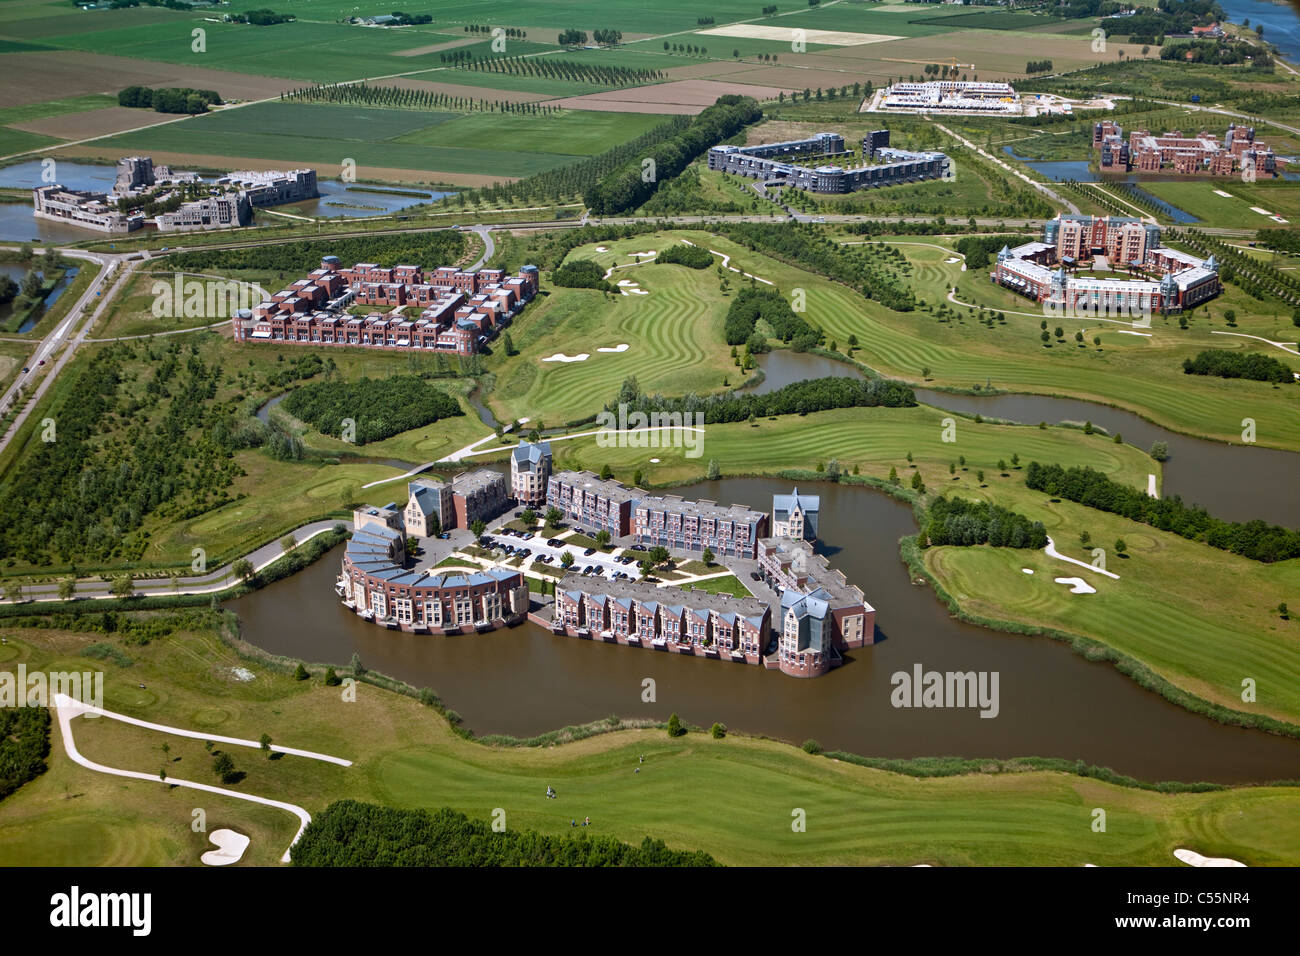 Les Pays-Bas, près de Den Bosch, immeubles d'habitation moderne appelé Haverleij châteaux. Vue aérienne. Banque D'Images